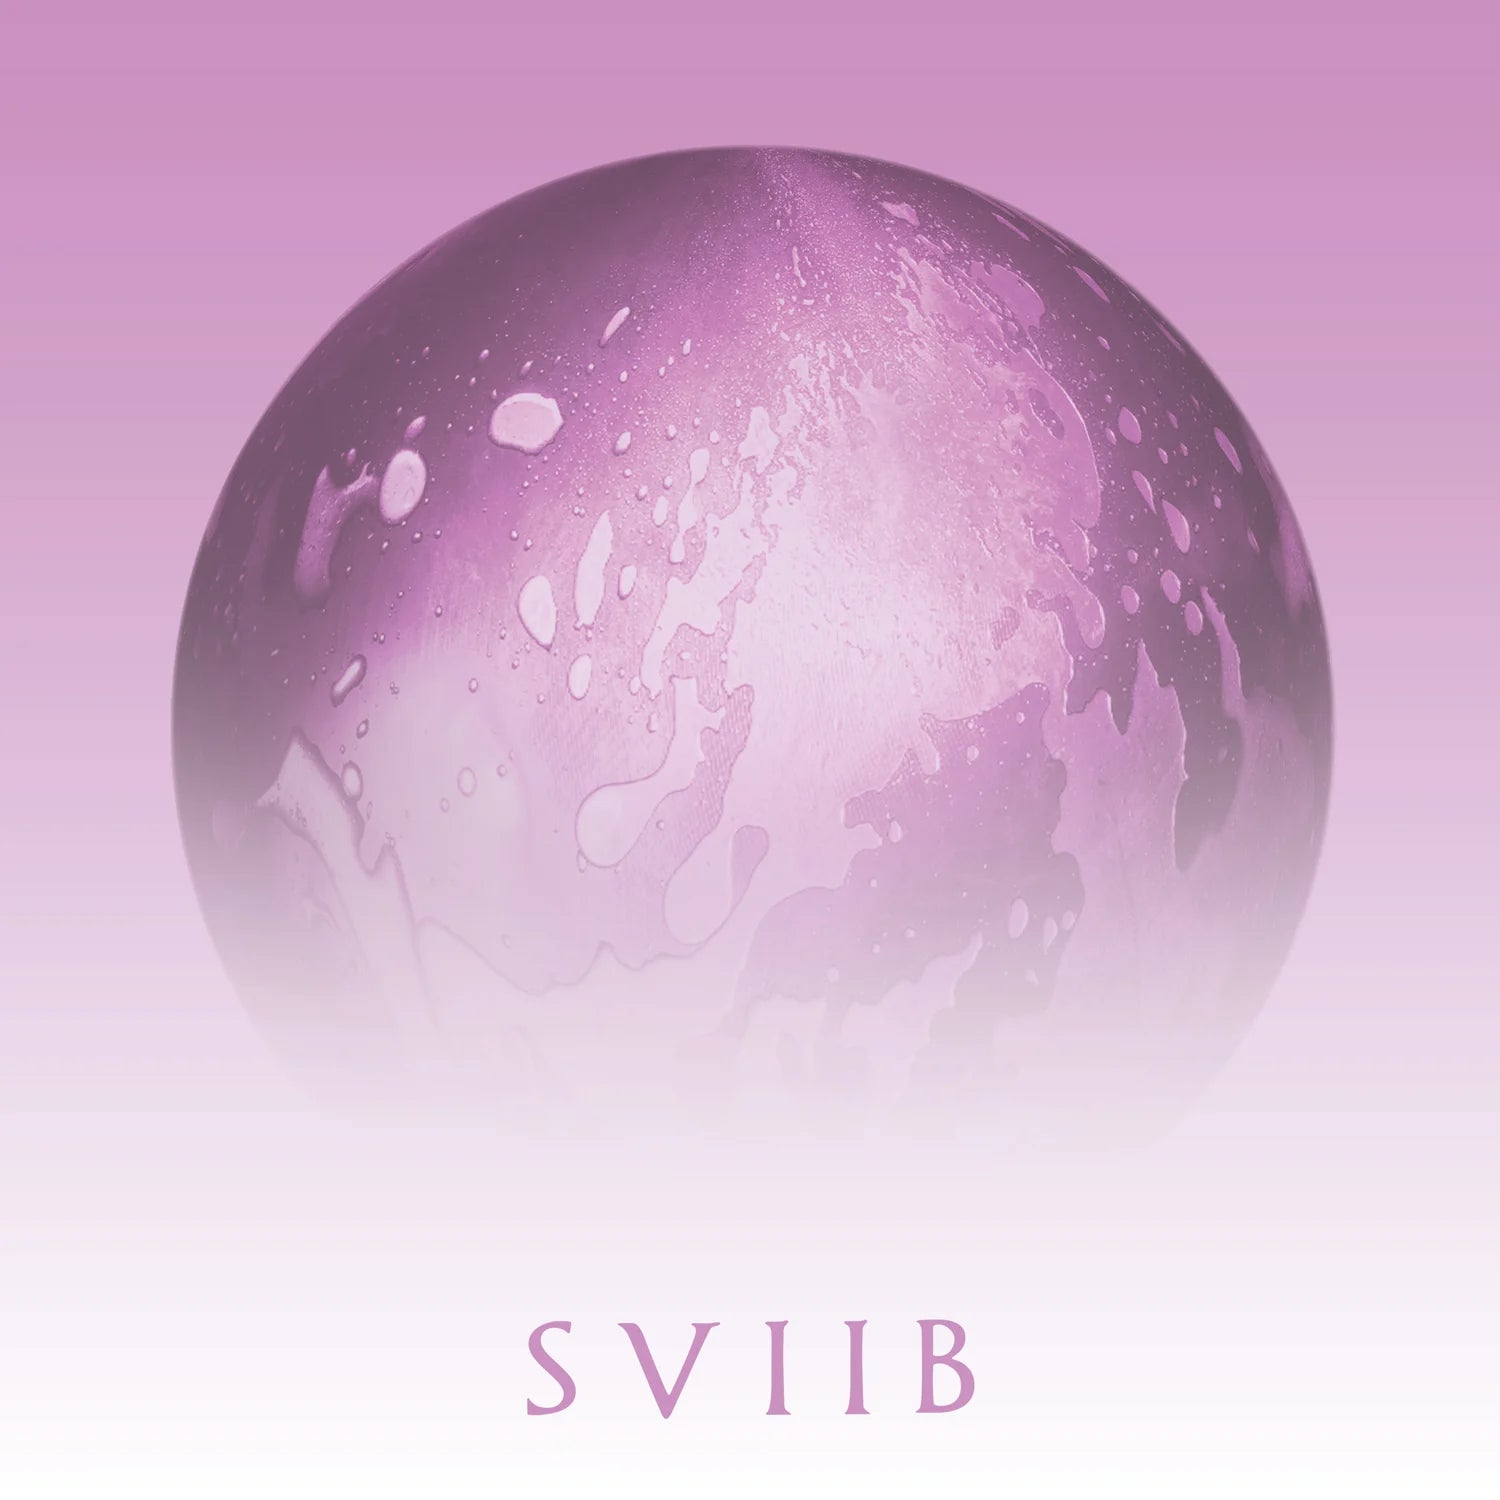 School of Seven Bells - SVIIB LP